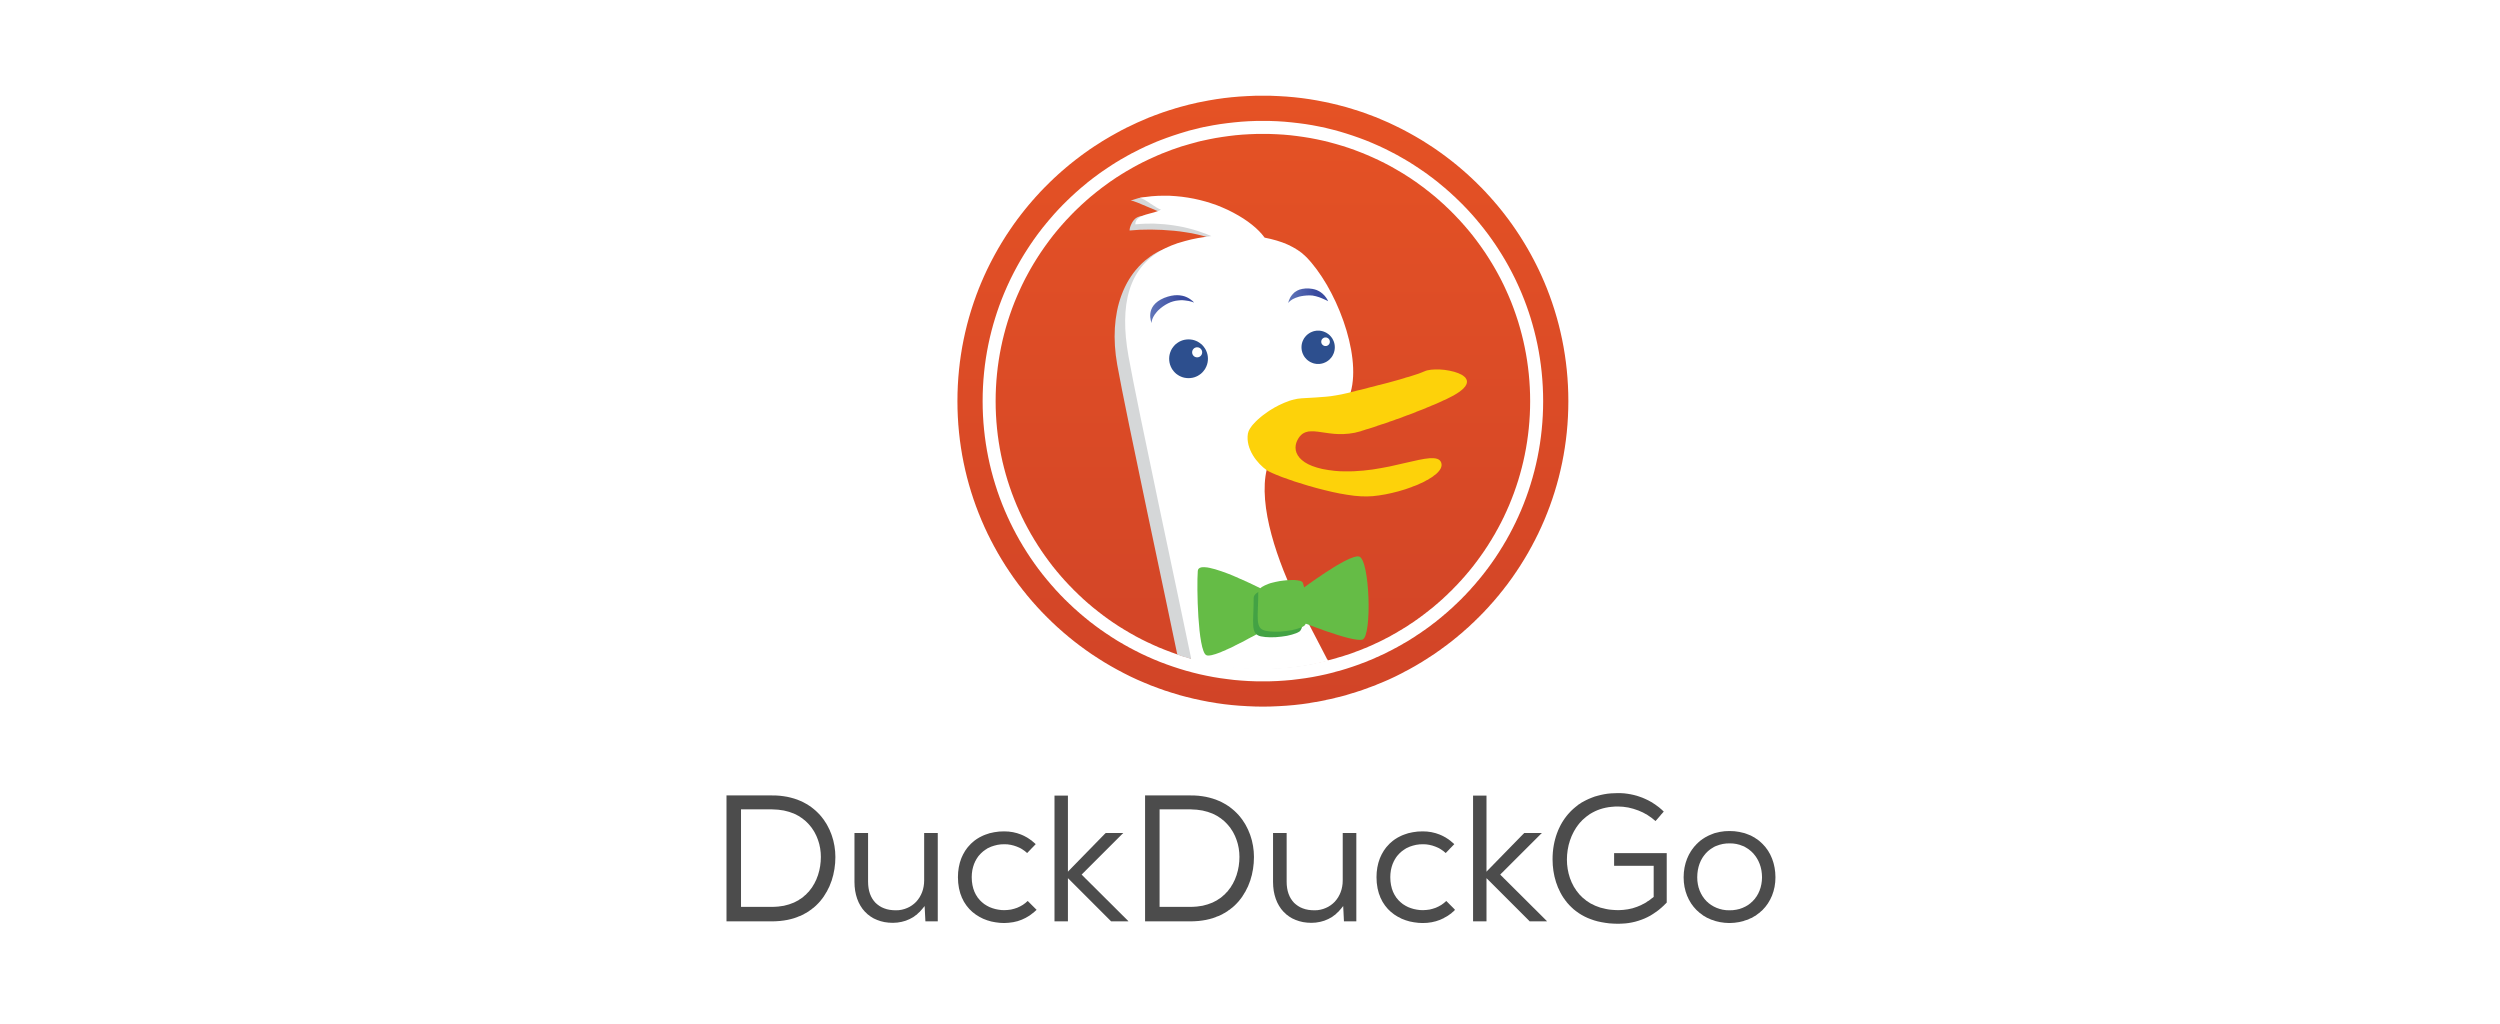 Čína blokuje vyhledávač DuckDuckGo - Diit.cz